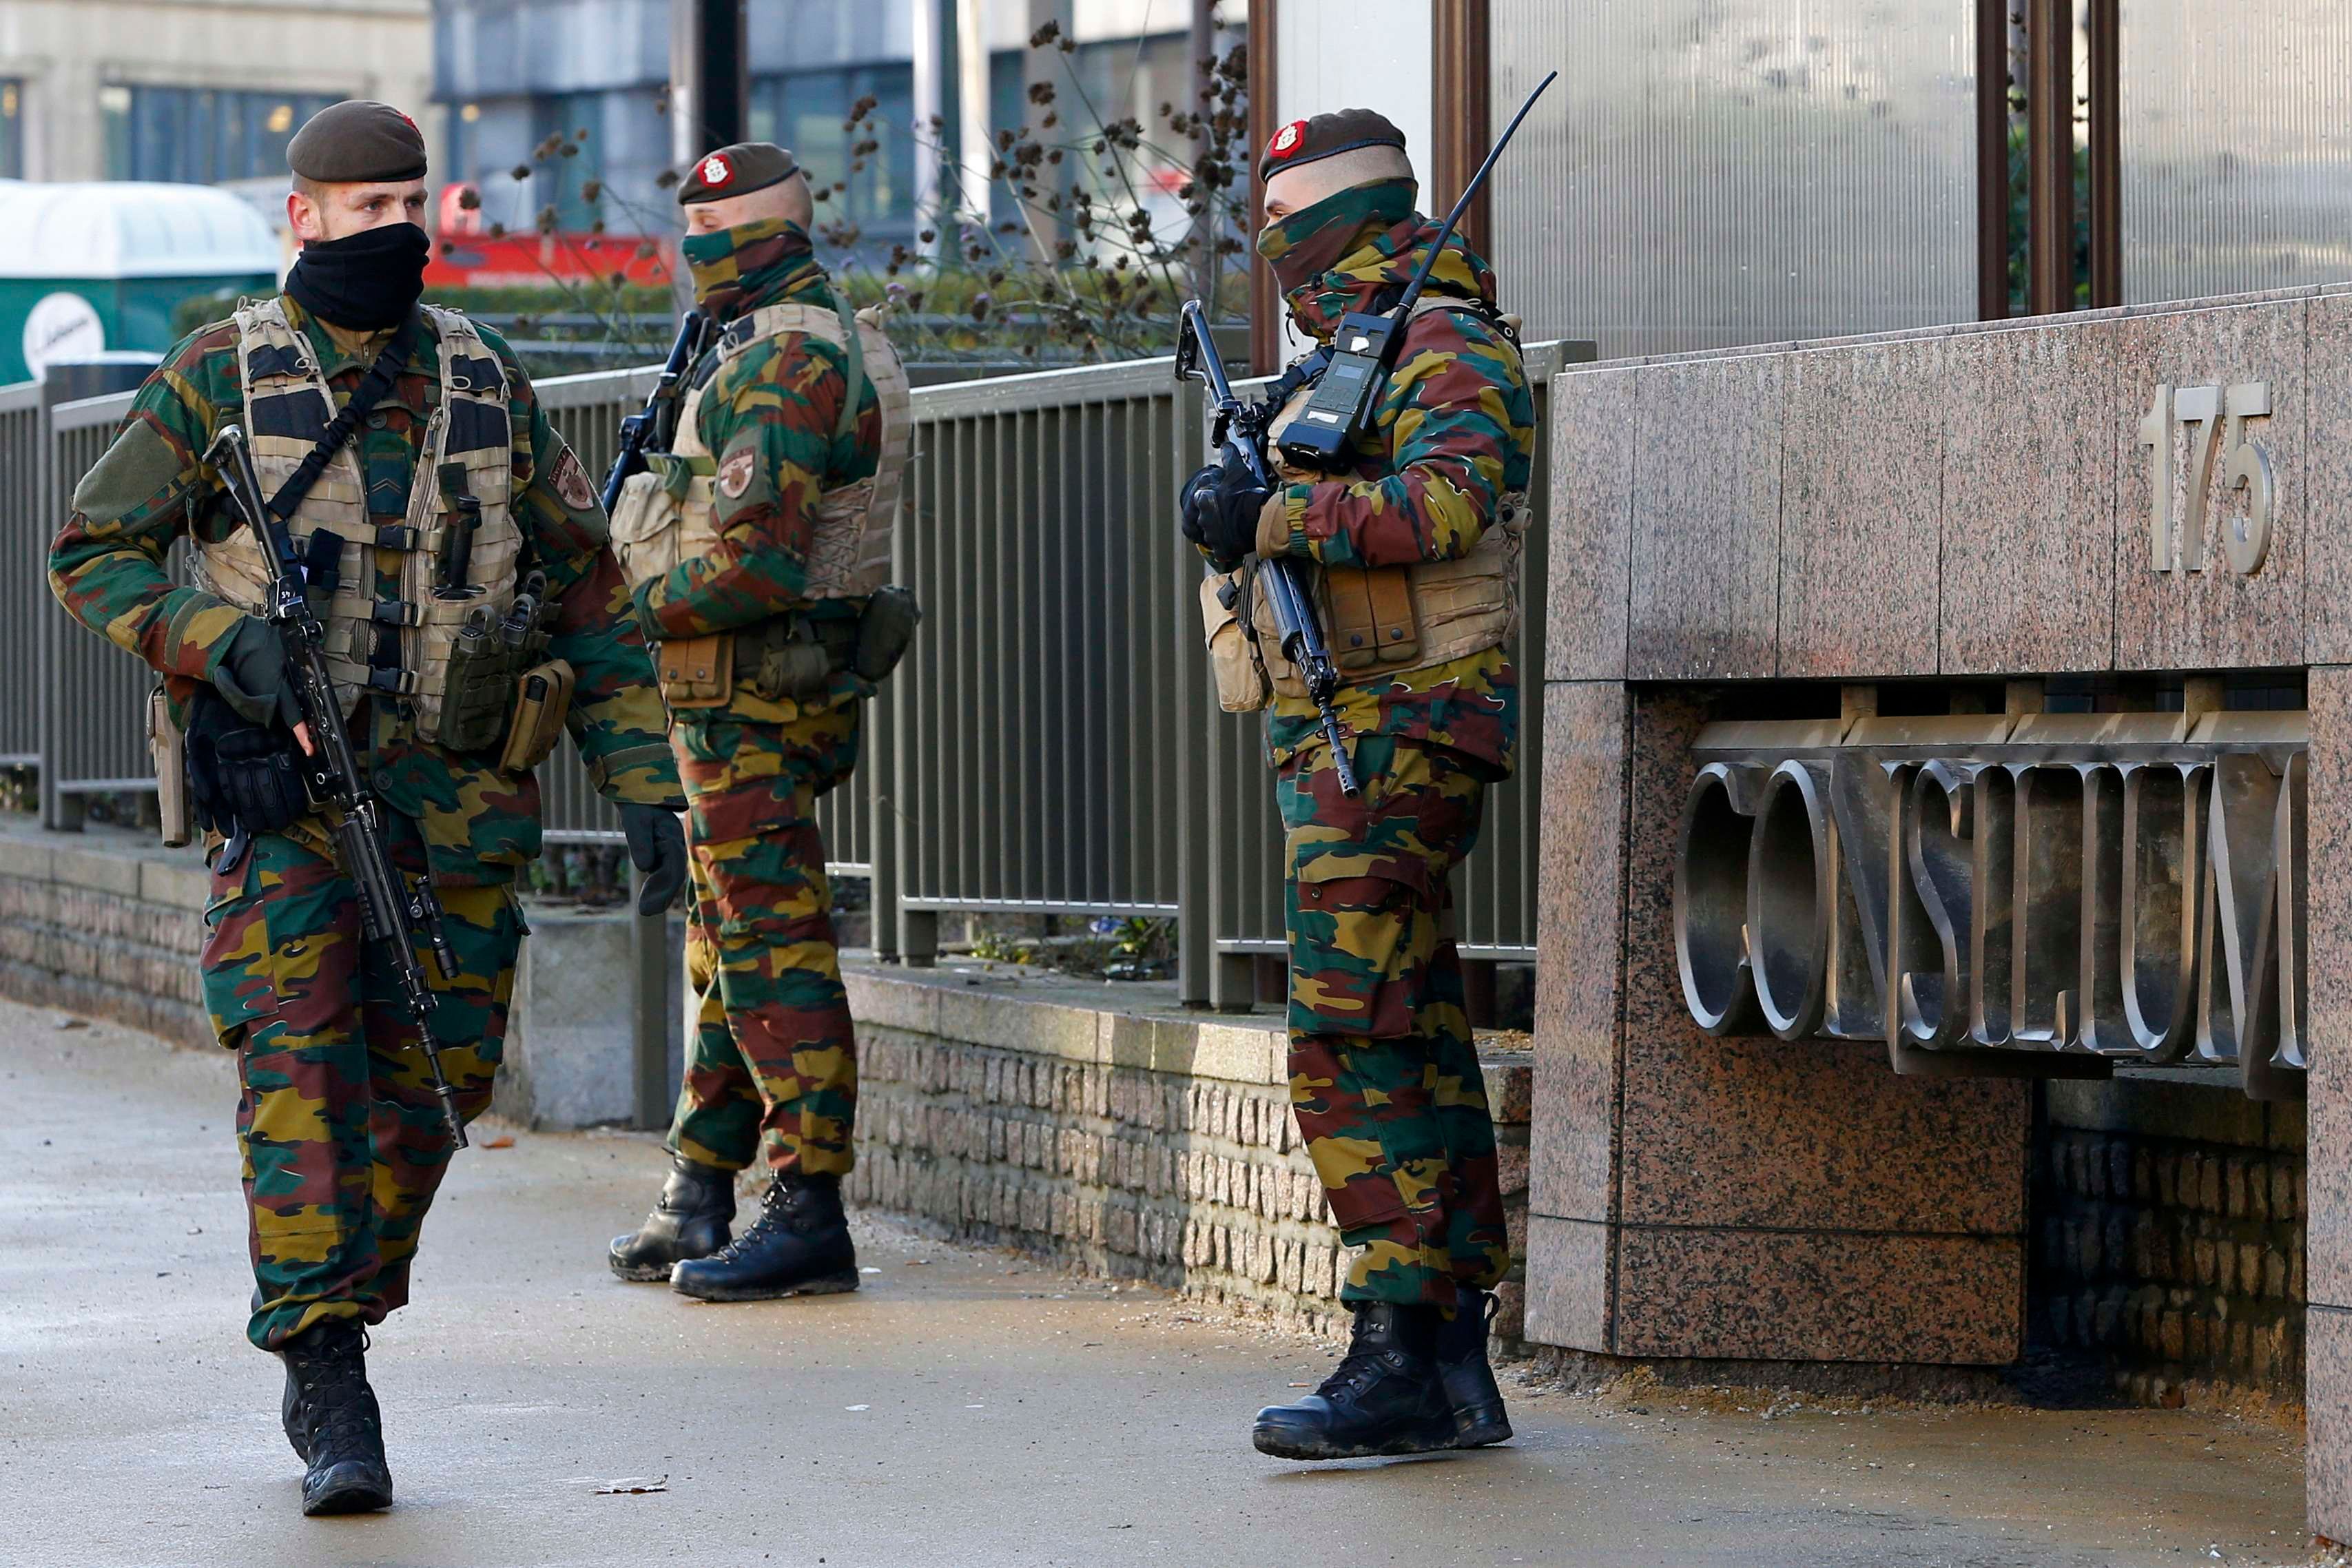 Розвідка попереджала про ймовірні теракти в Брюсселі, — ЗМІ